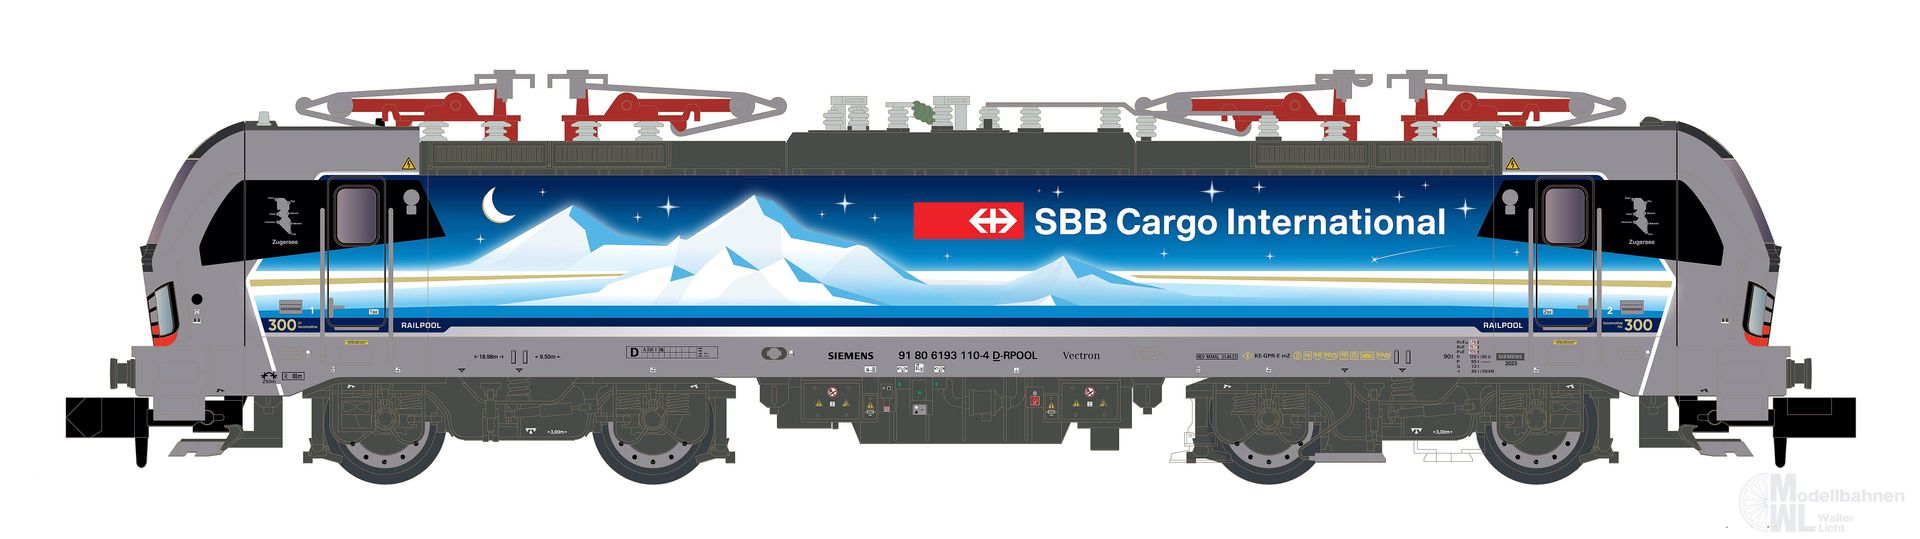 Hobbytrain 30175 - E-Lok BR 193 110 SBB Cargo Ep.VI Goldpiercer N 1:160